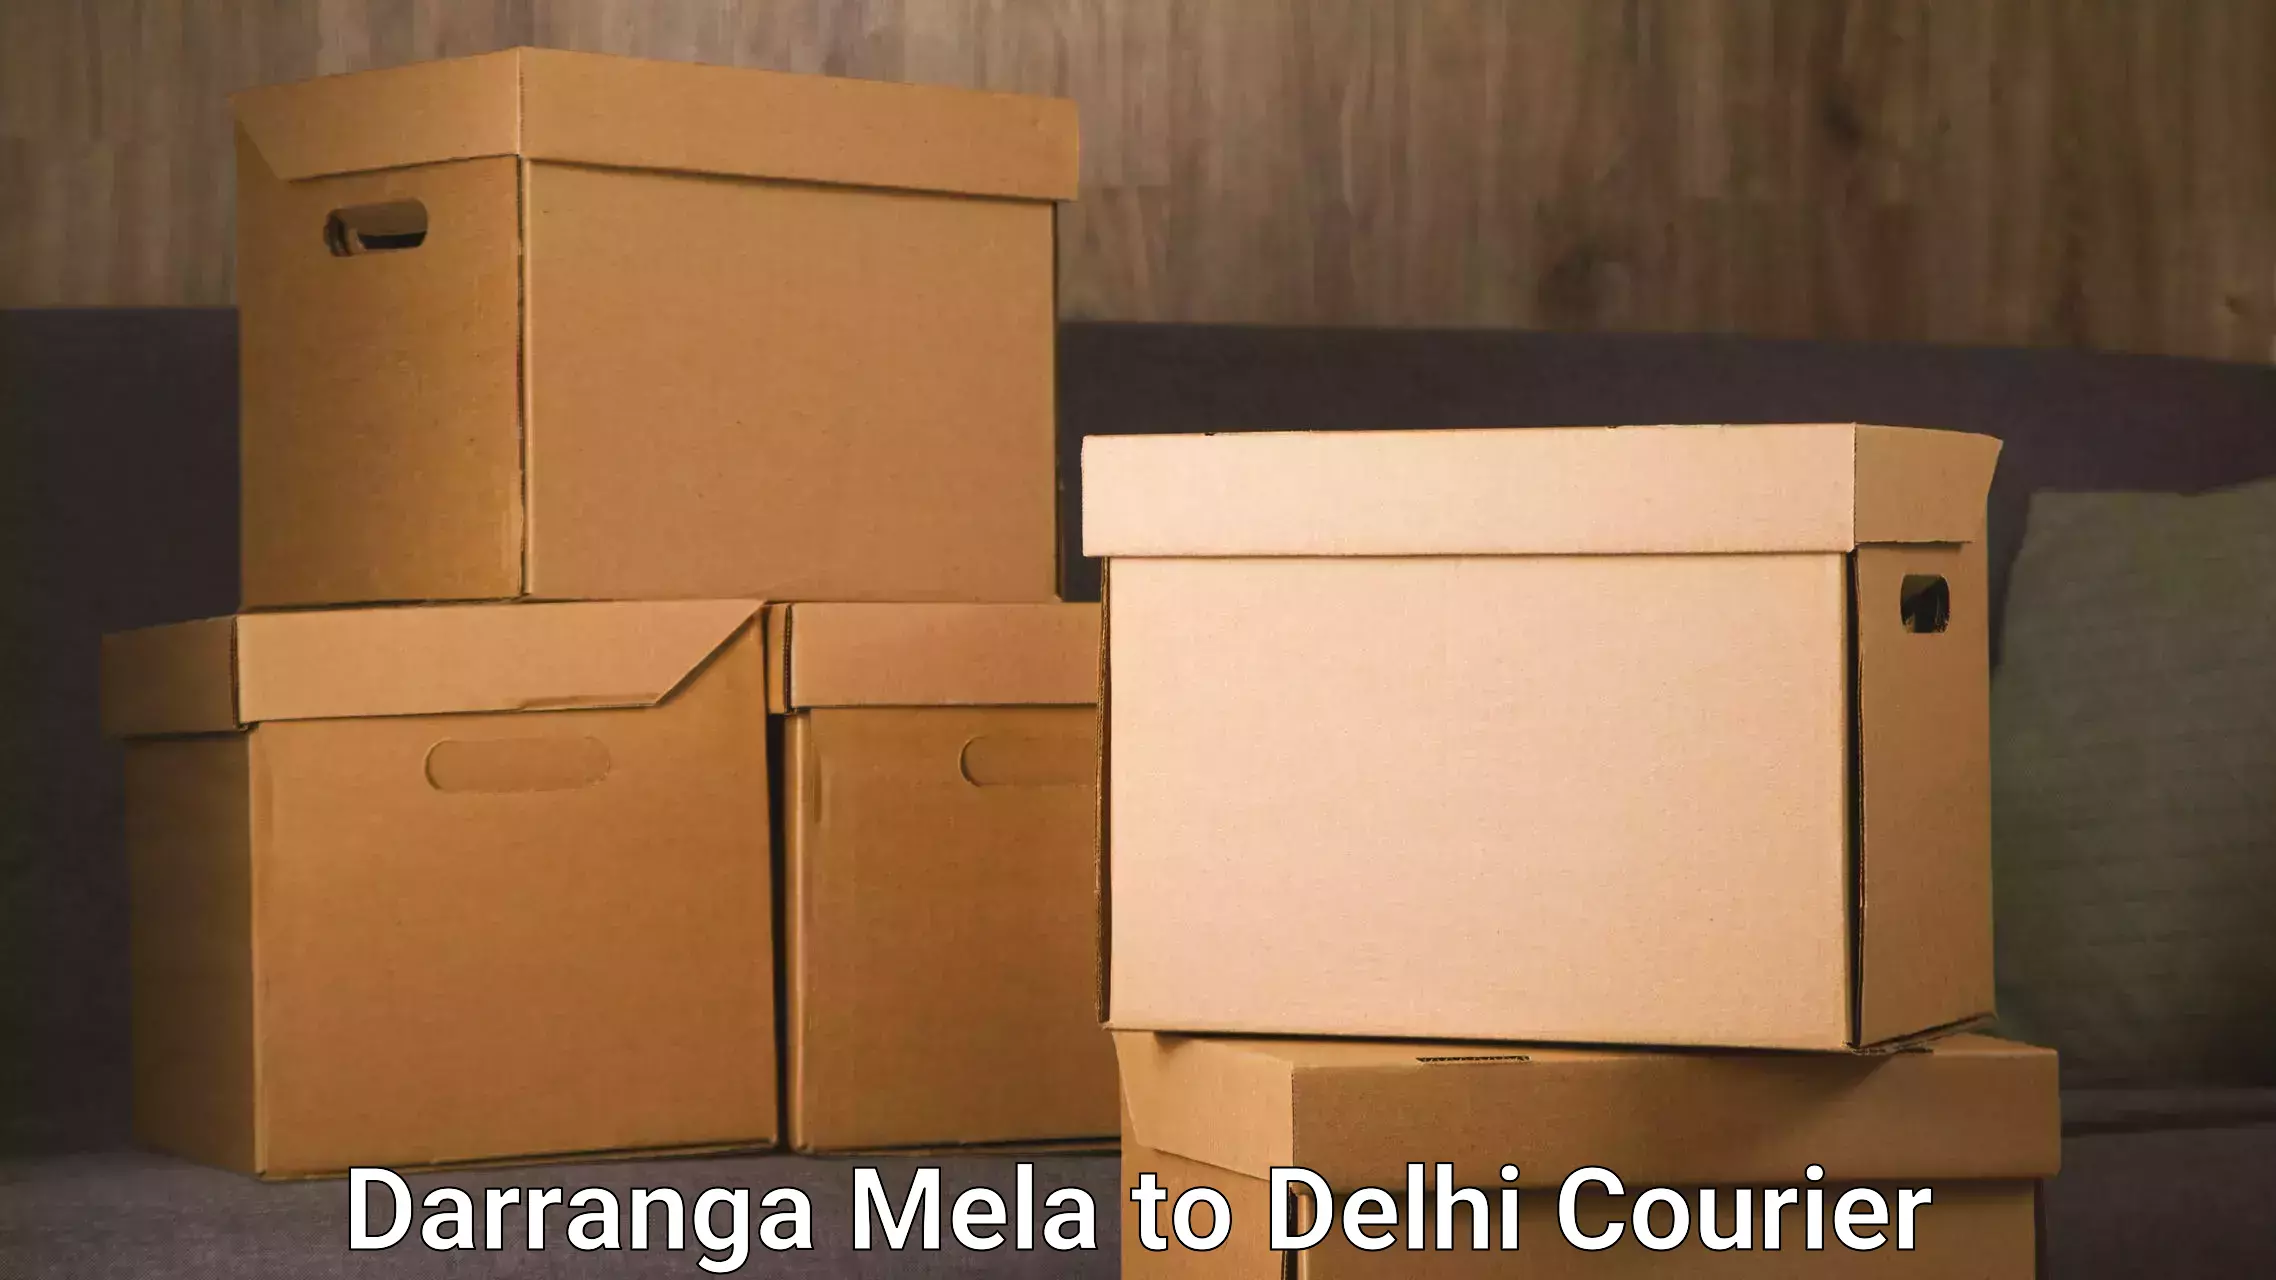 Modern delivery methods in Darranga Mela to East Delhi